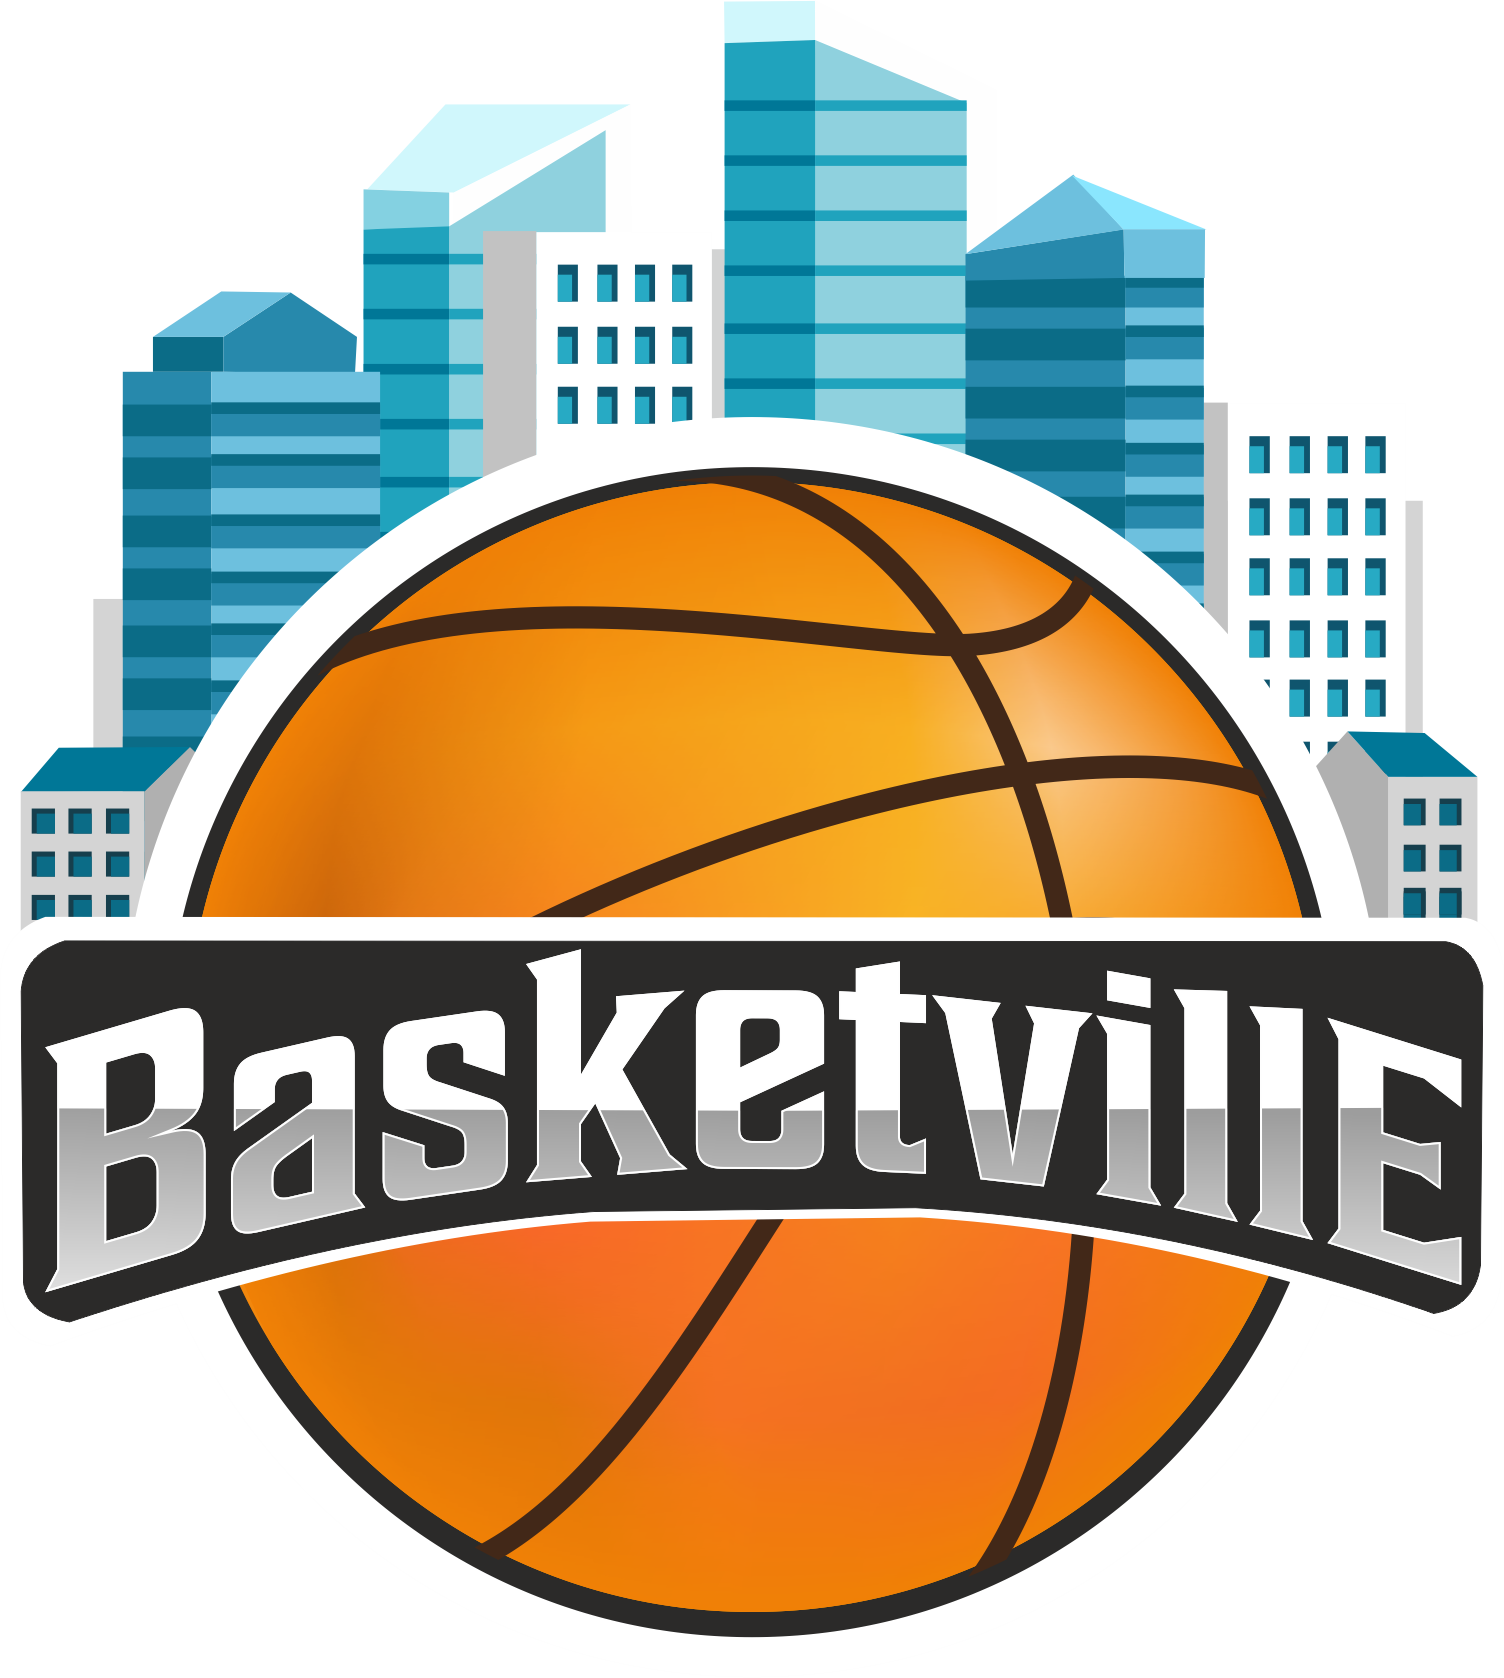 Basketville